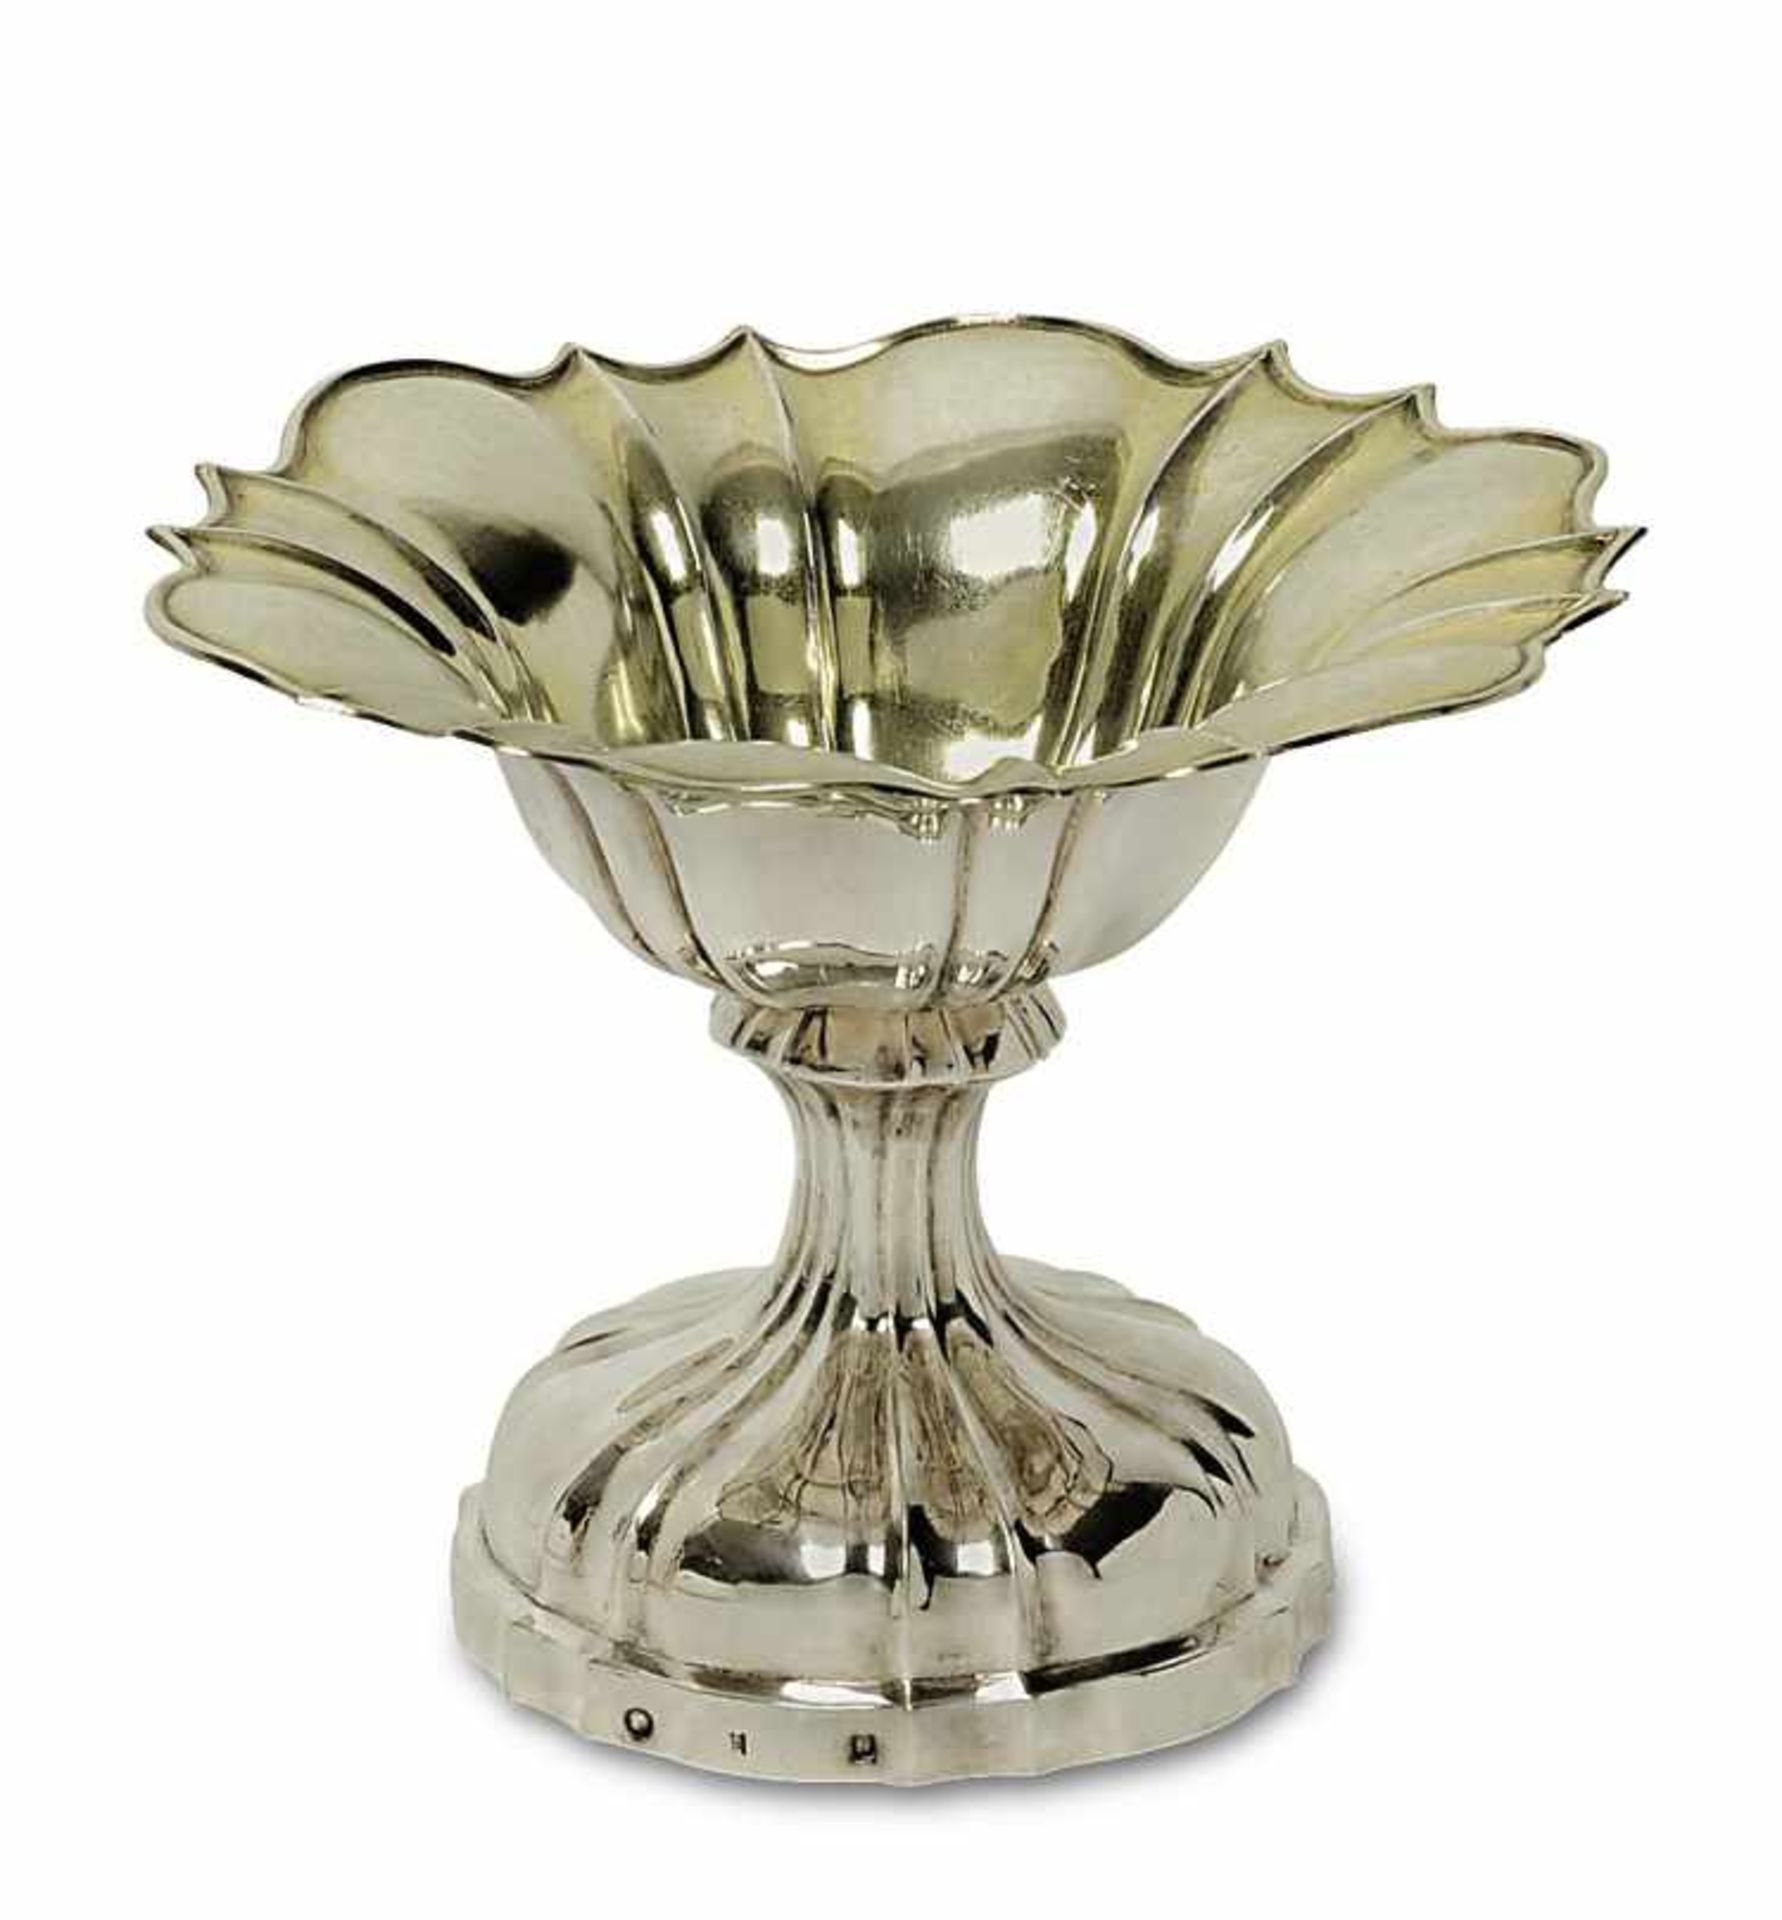 SchaleMons/Belgien, 1831 - 1869 Silber, innen Reste von Vergoldung. Gewölbter Rundfuß und Schale mit